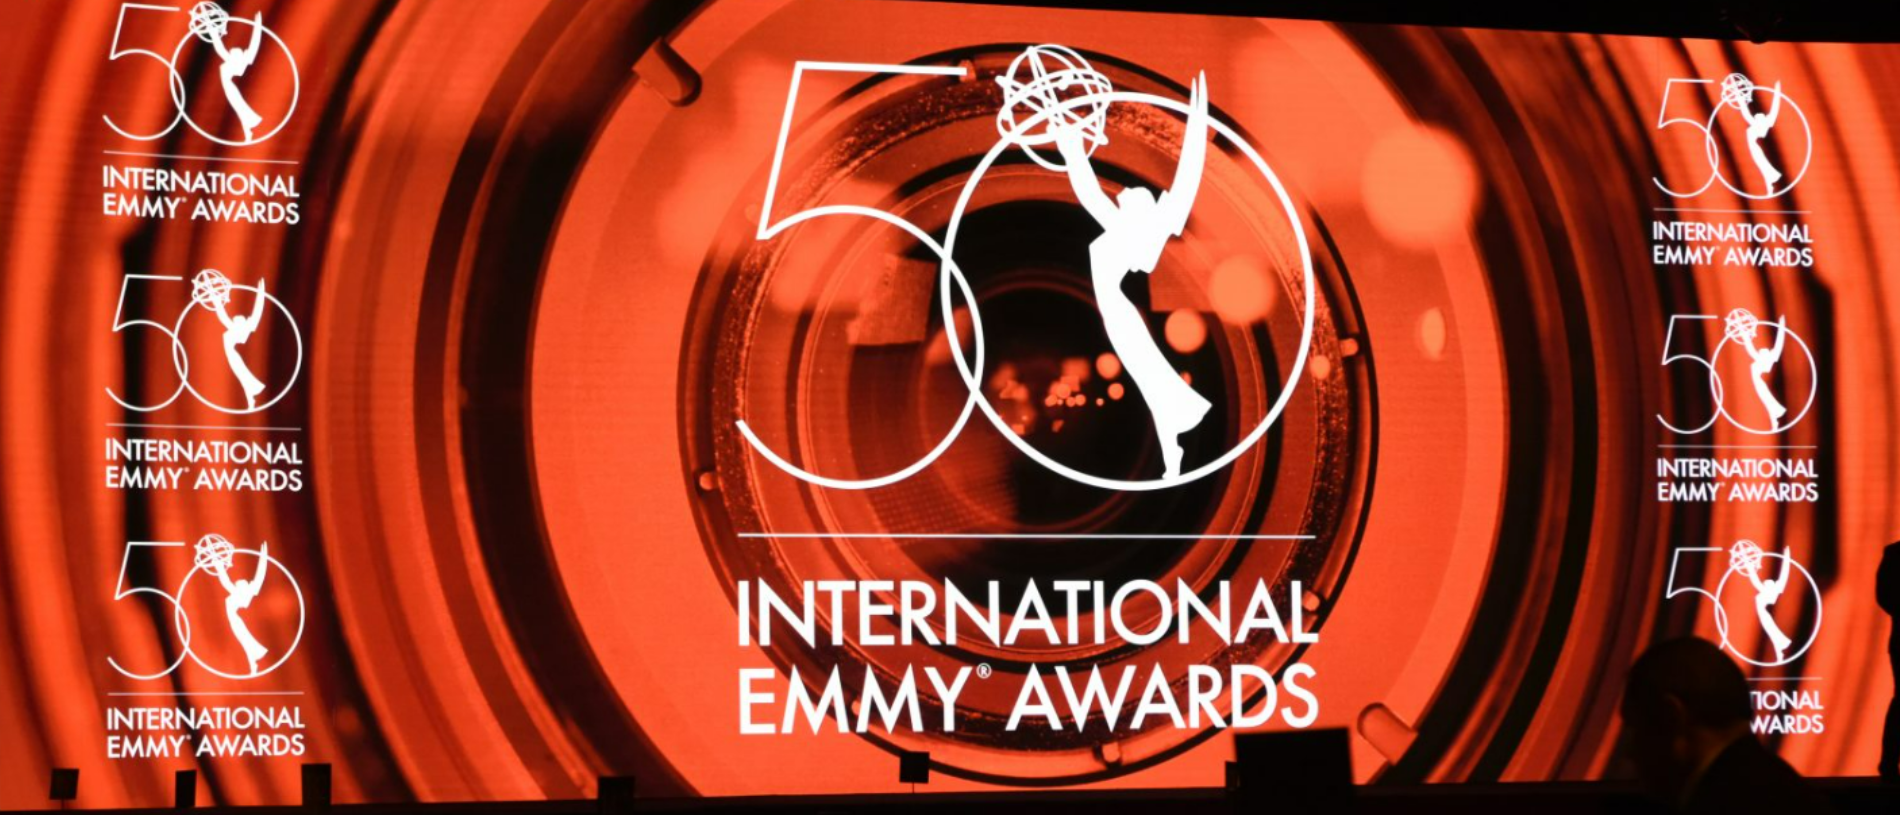 You are currently viewing Estes são os vencedores dos International Emmy Awards 2022